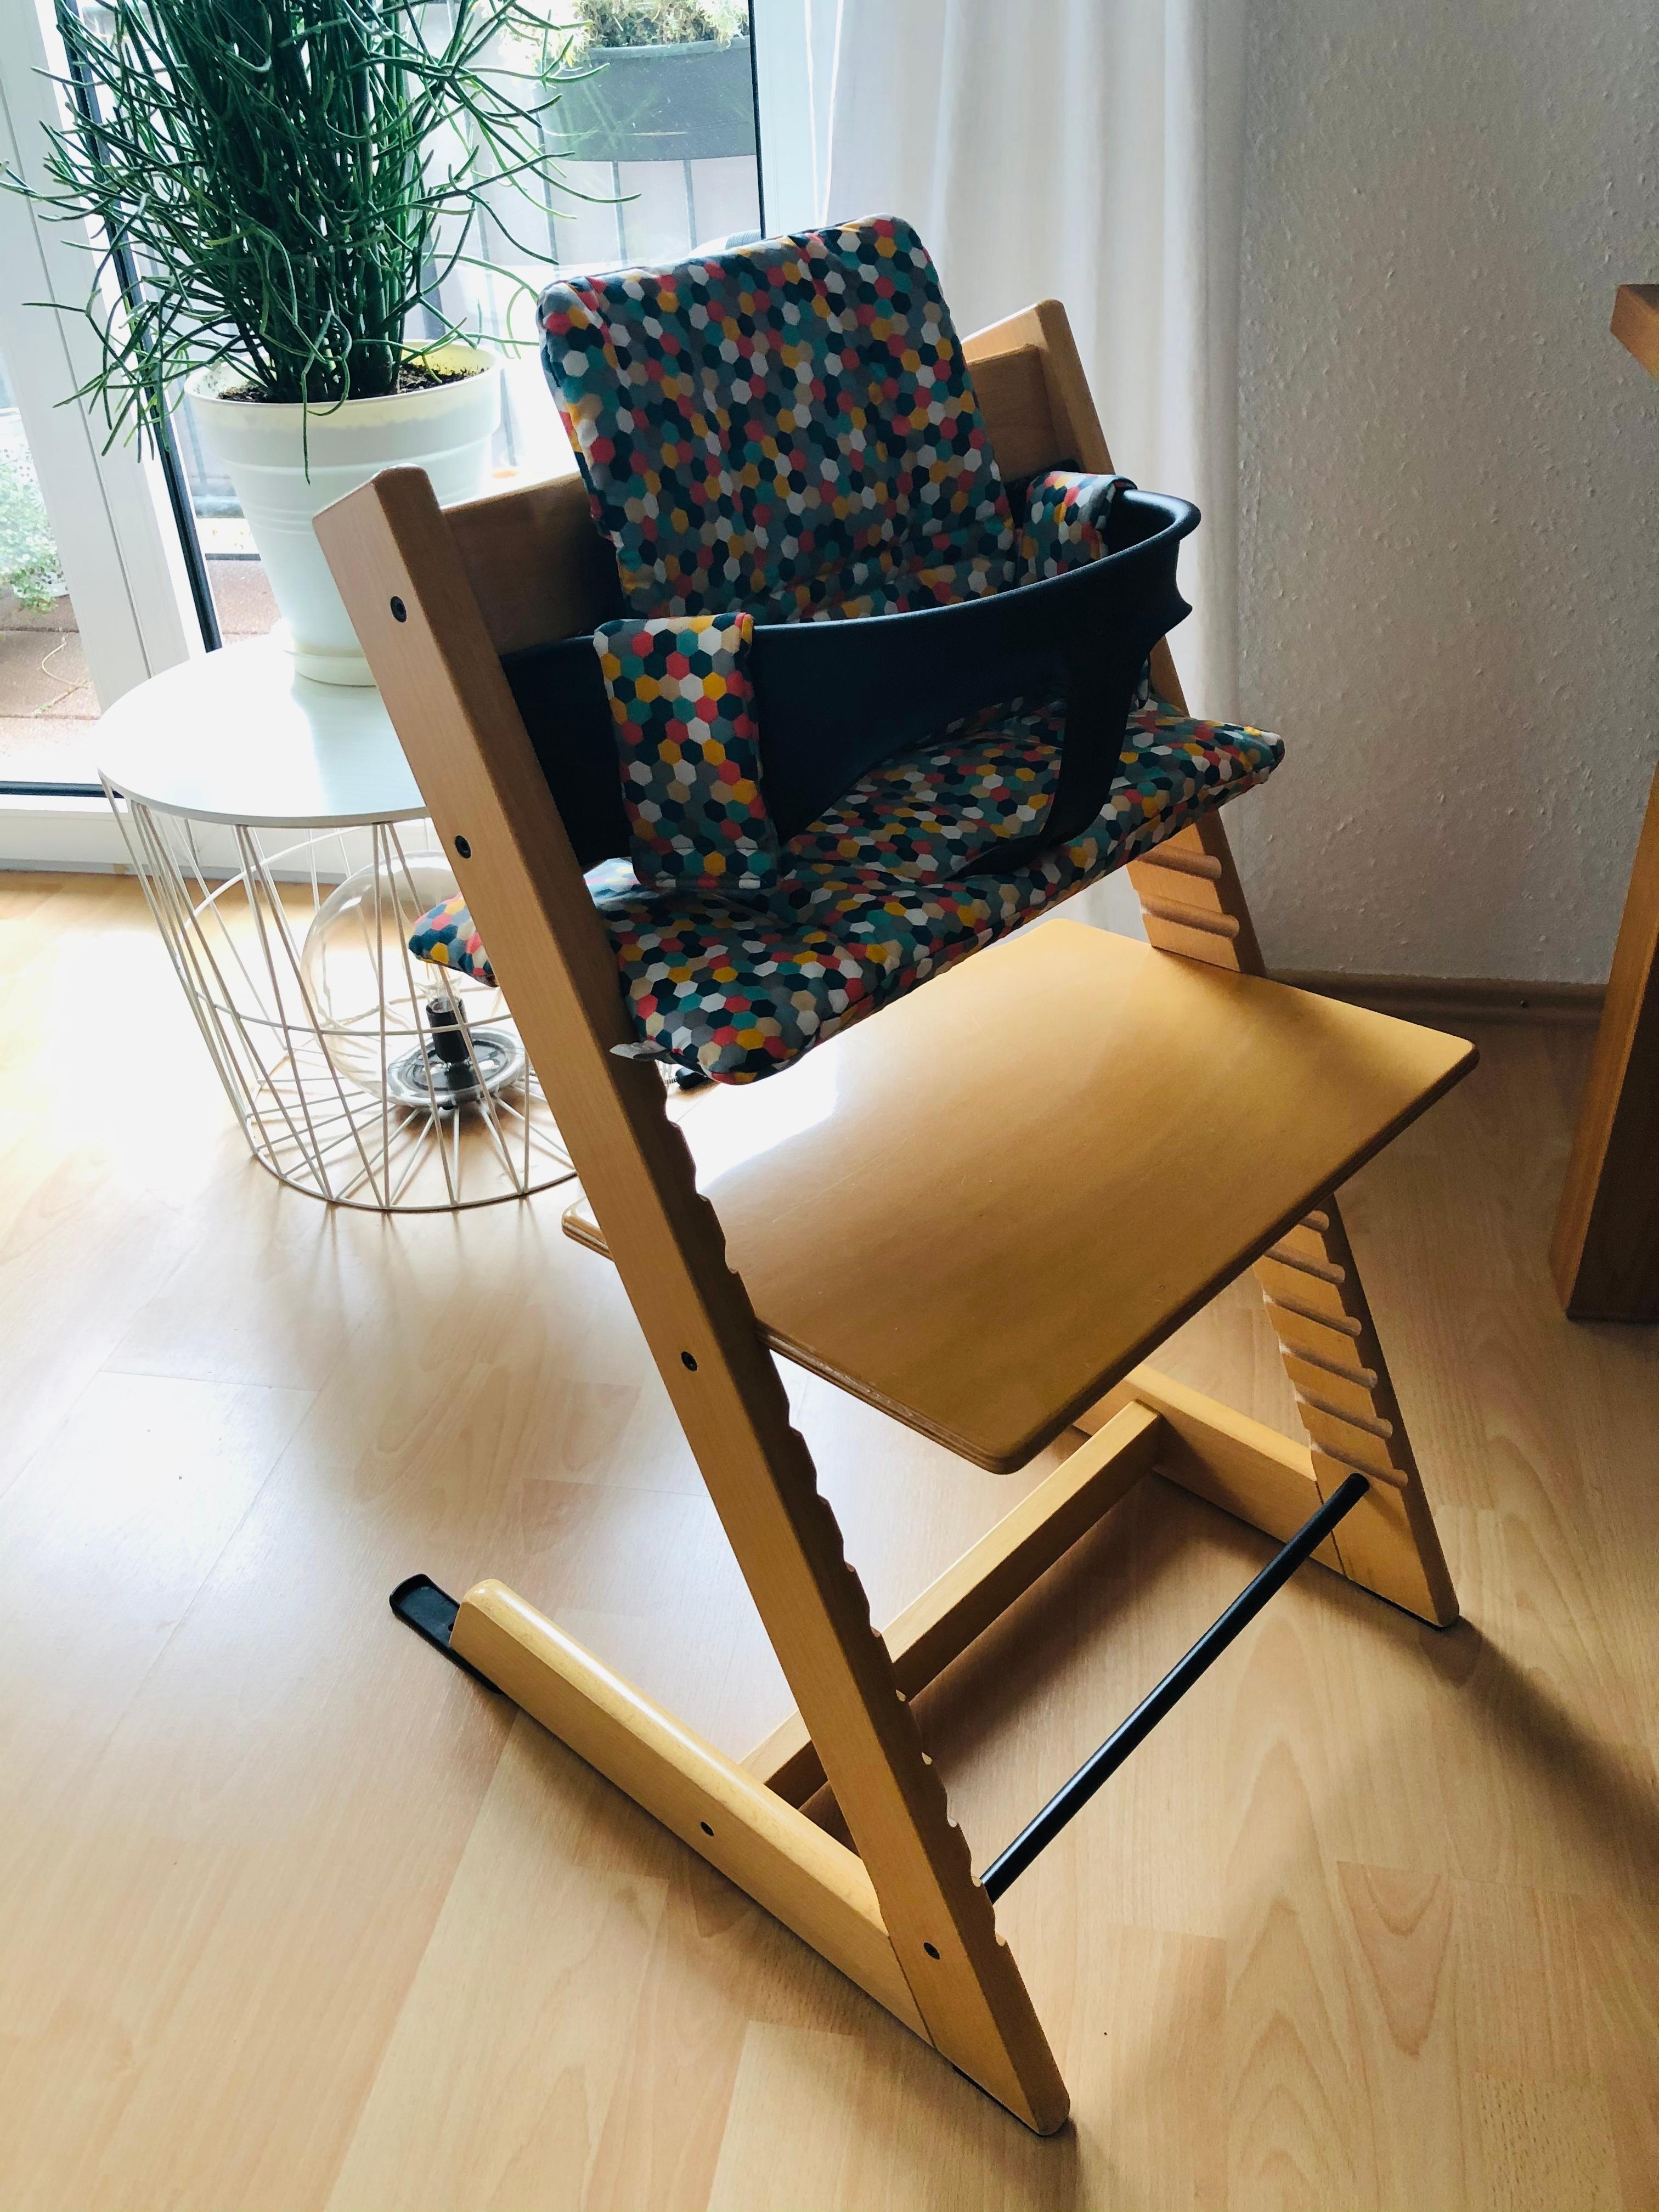 Pimp my Tripp Trapp. Stuhl und Sitzverkleinerer gebraucht, neues Kissen plus neue Gleiter.#stokke #tripptrapp #hochstuhl